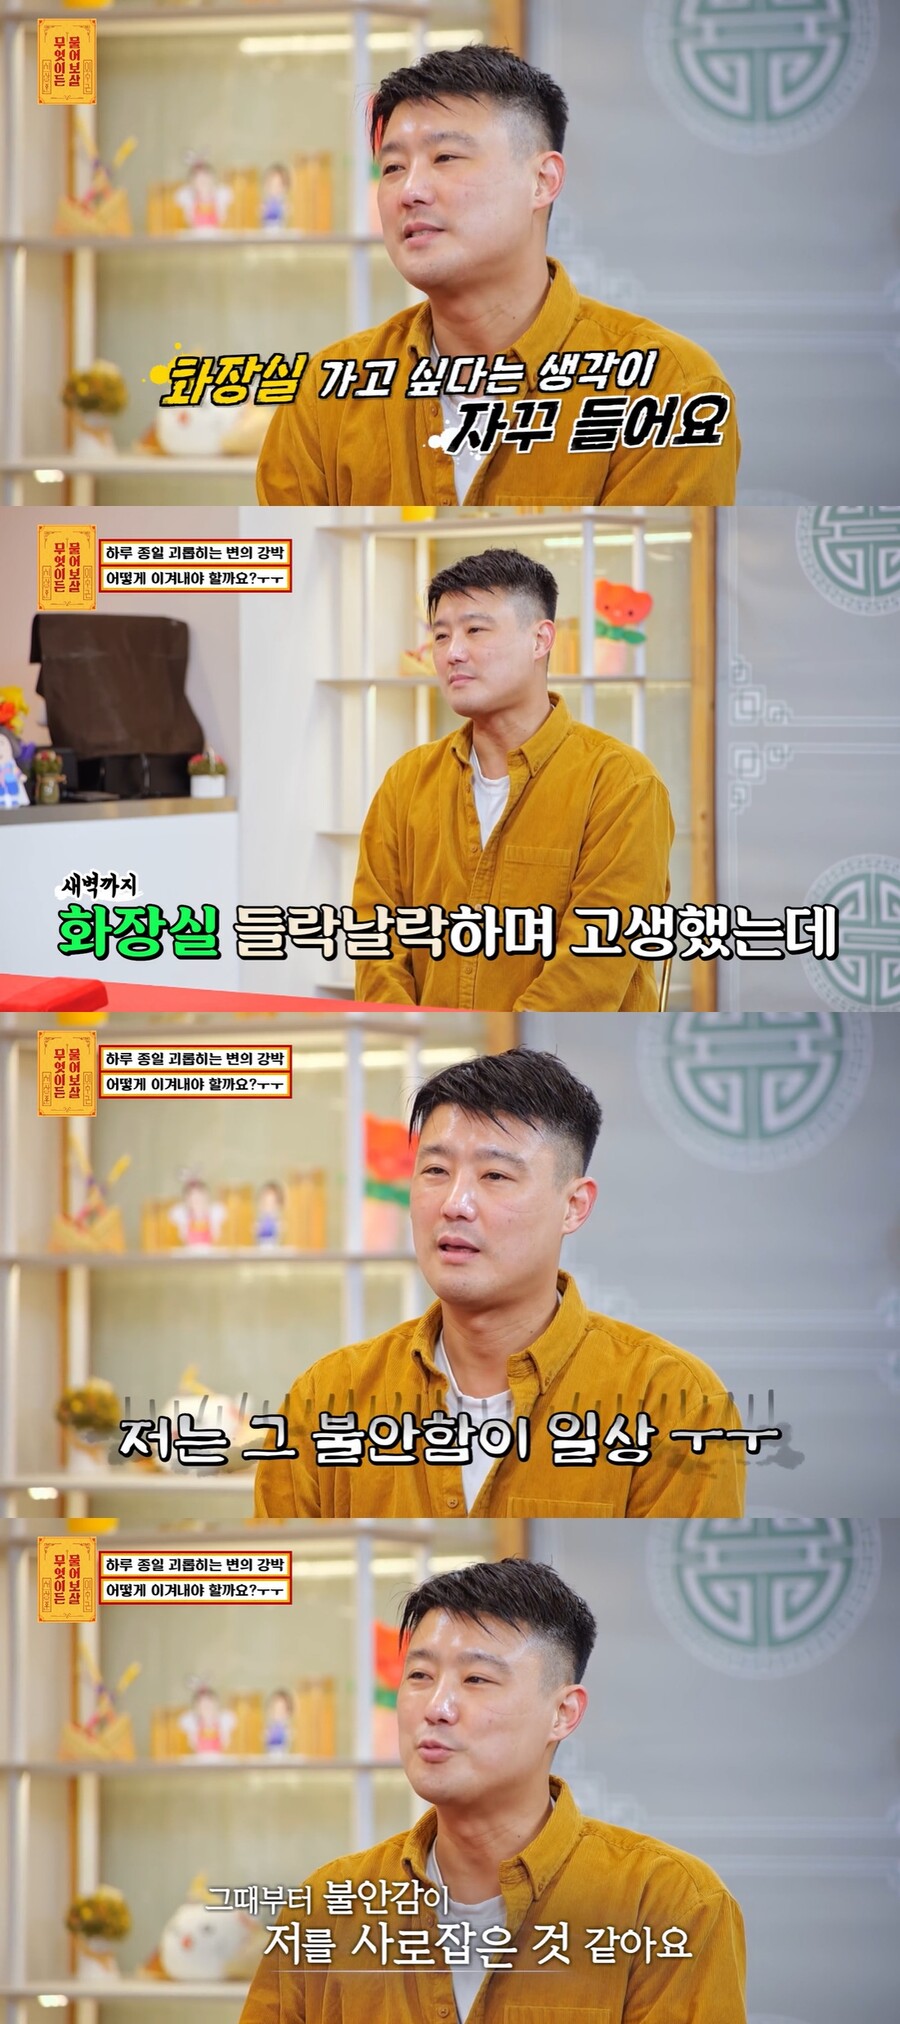 ▲ 출처| KBS 조이 예능프로그램 '무엇이든 물어보살' 방송화면 캡처